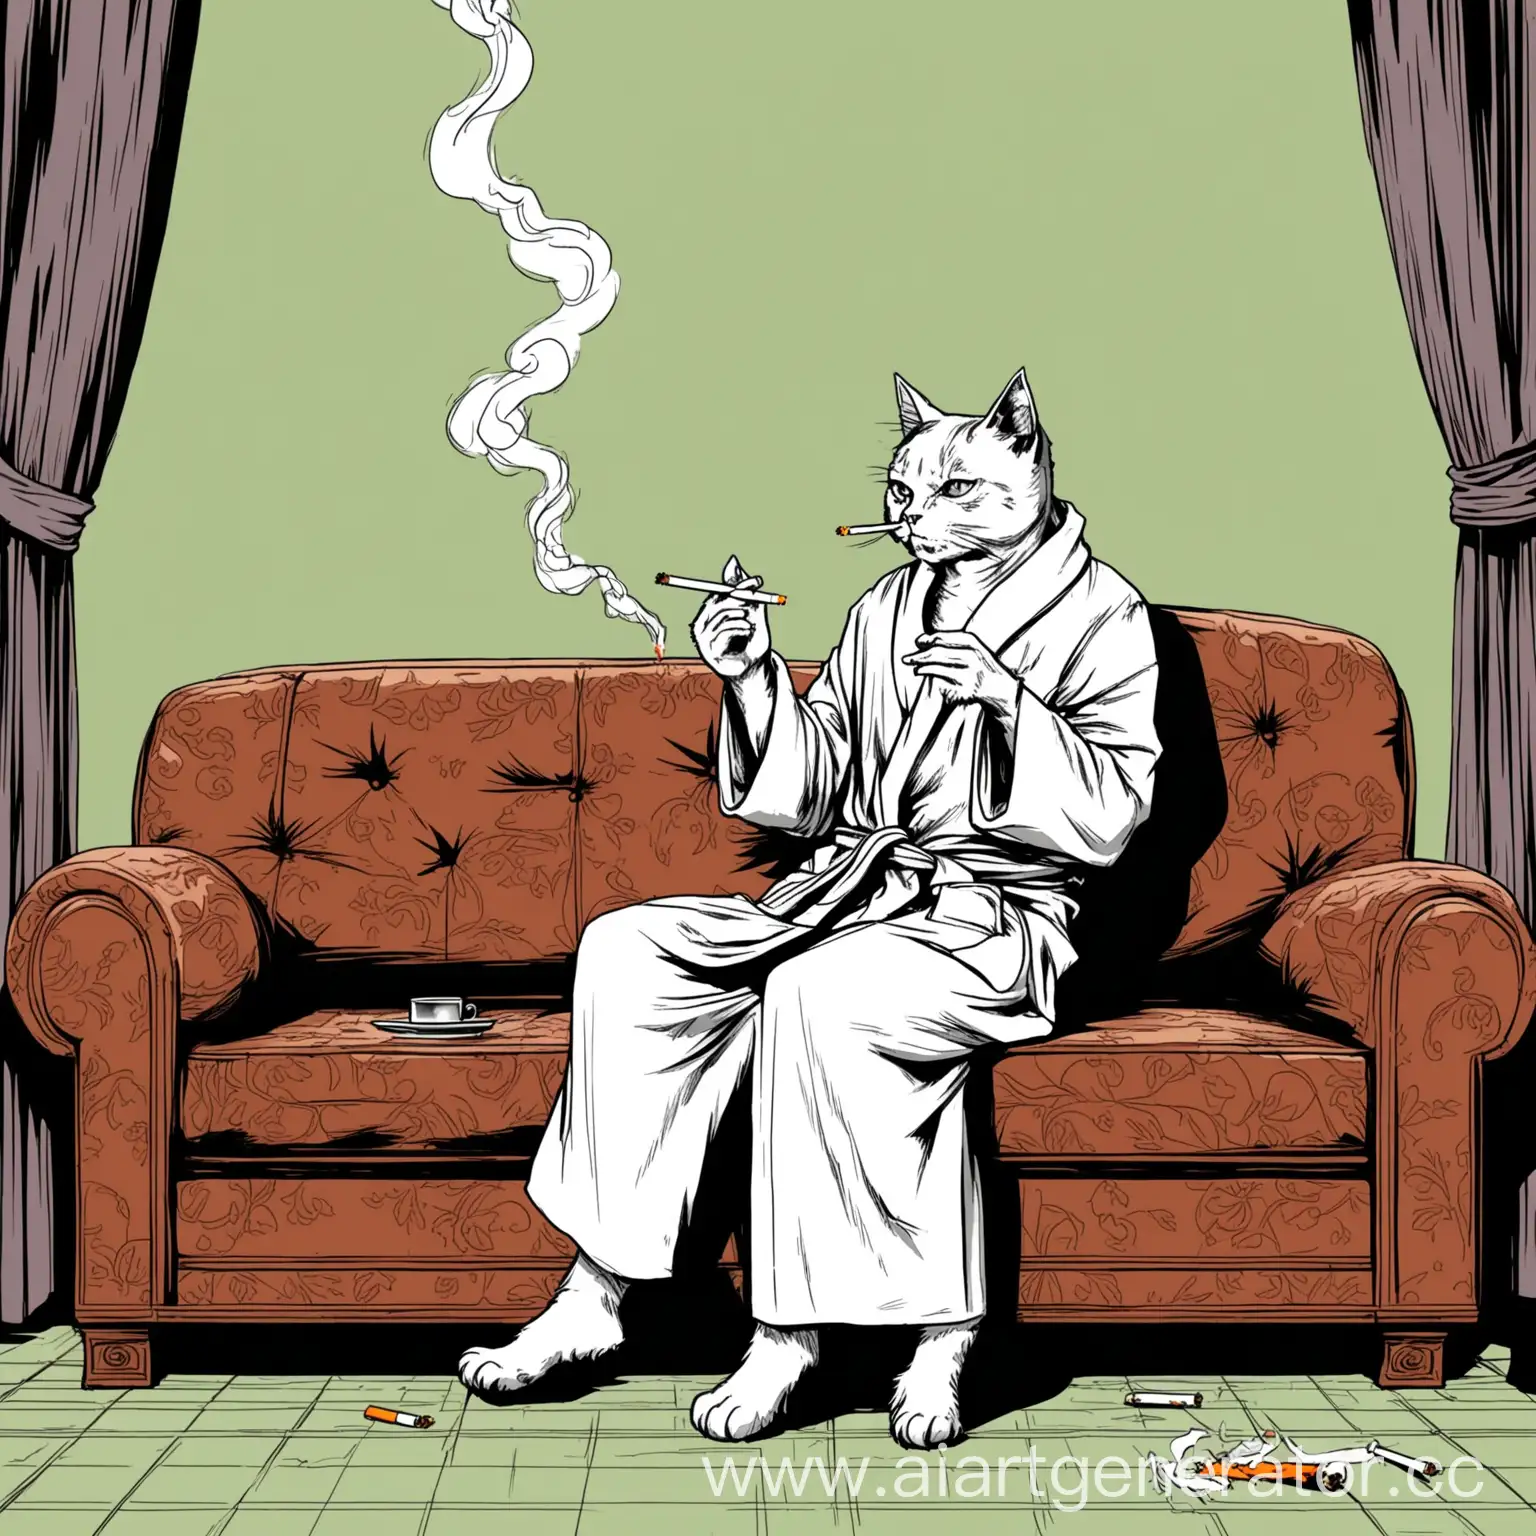 Кот-алкоголик в халате сидит на старом диване и курит сигарету. Рисовка из комикса